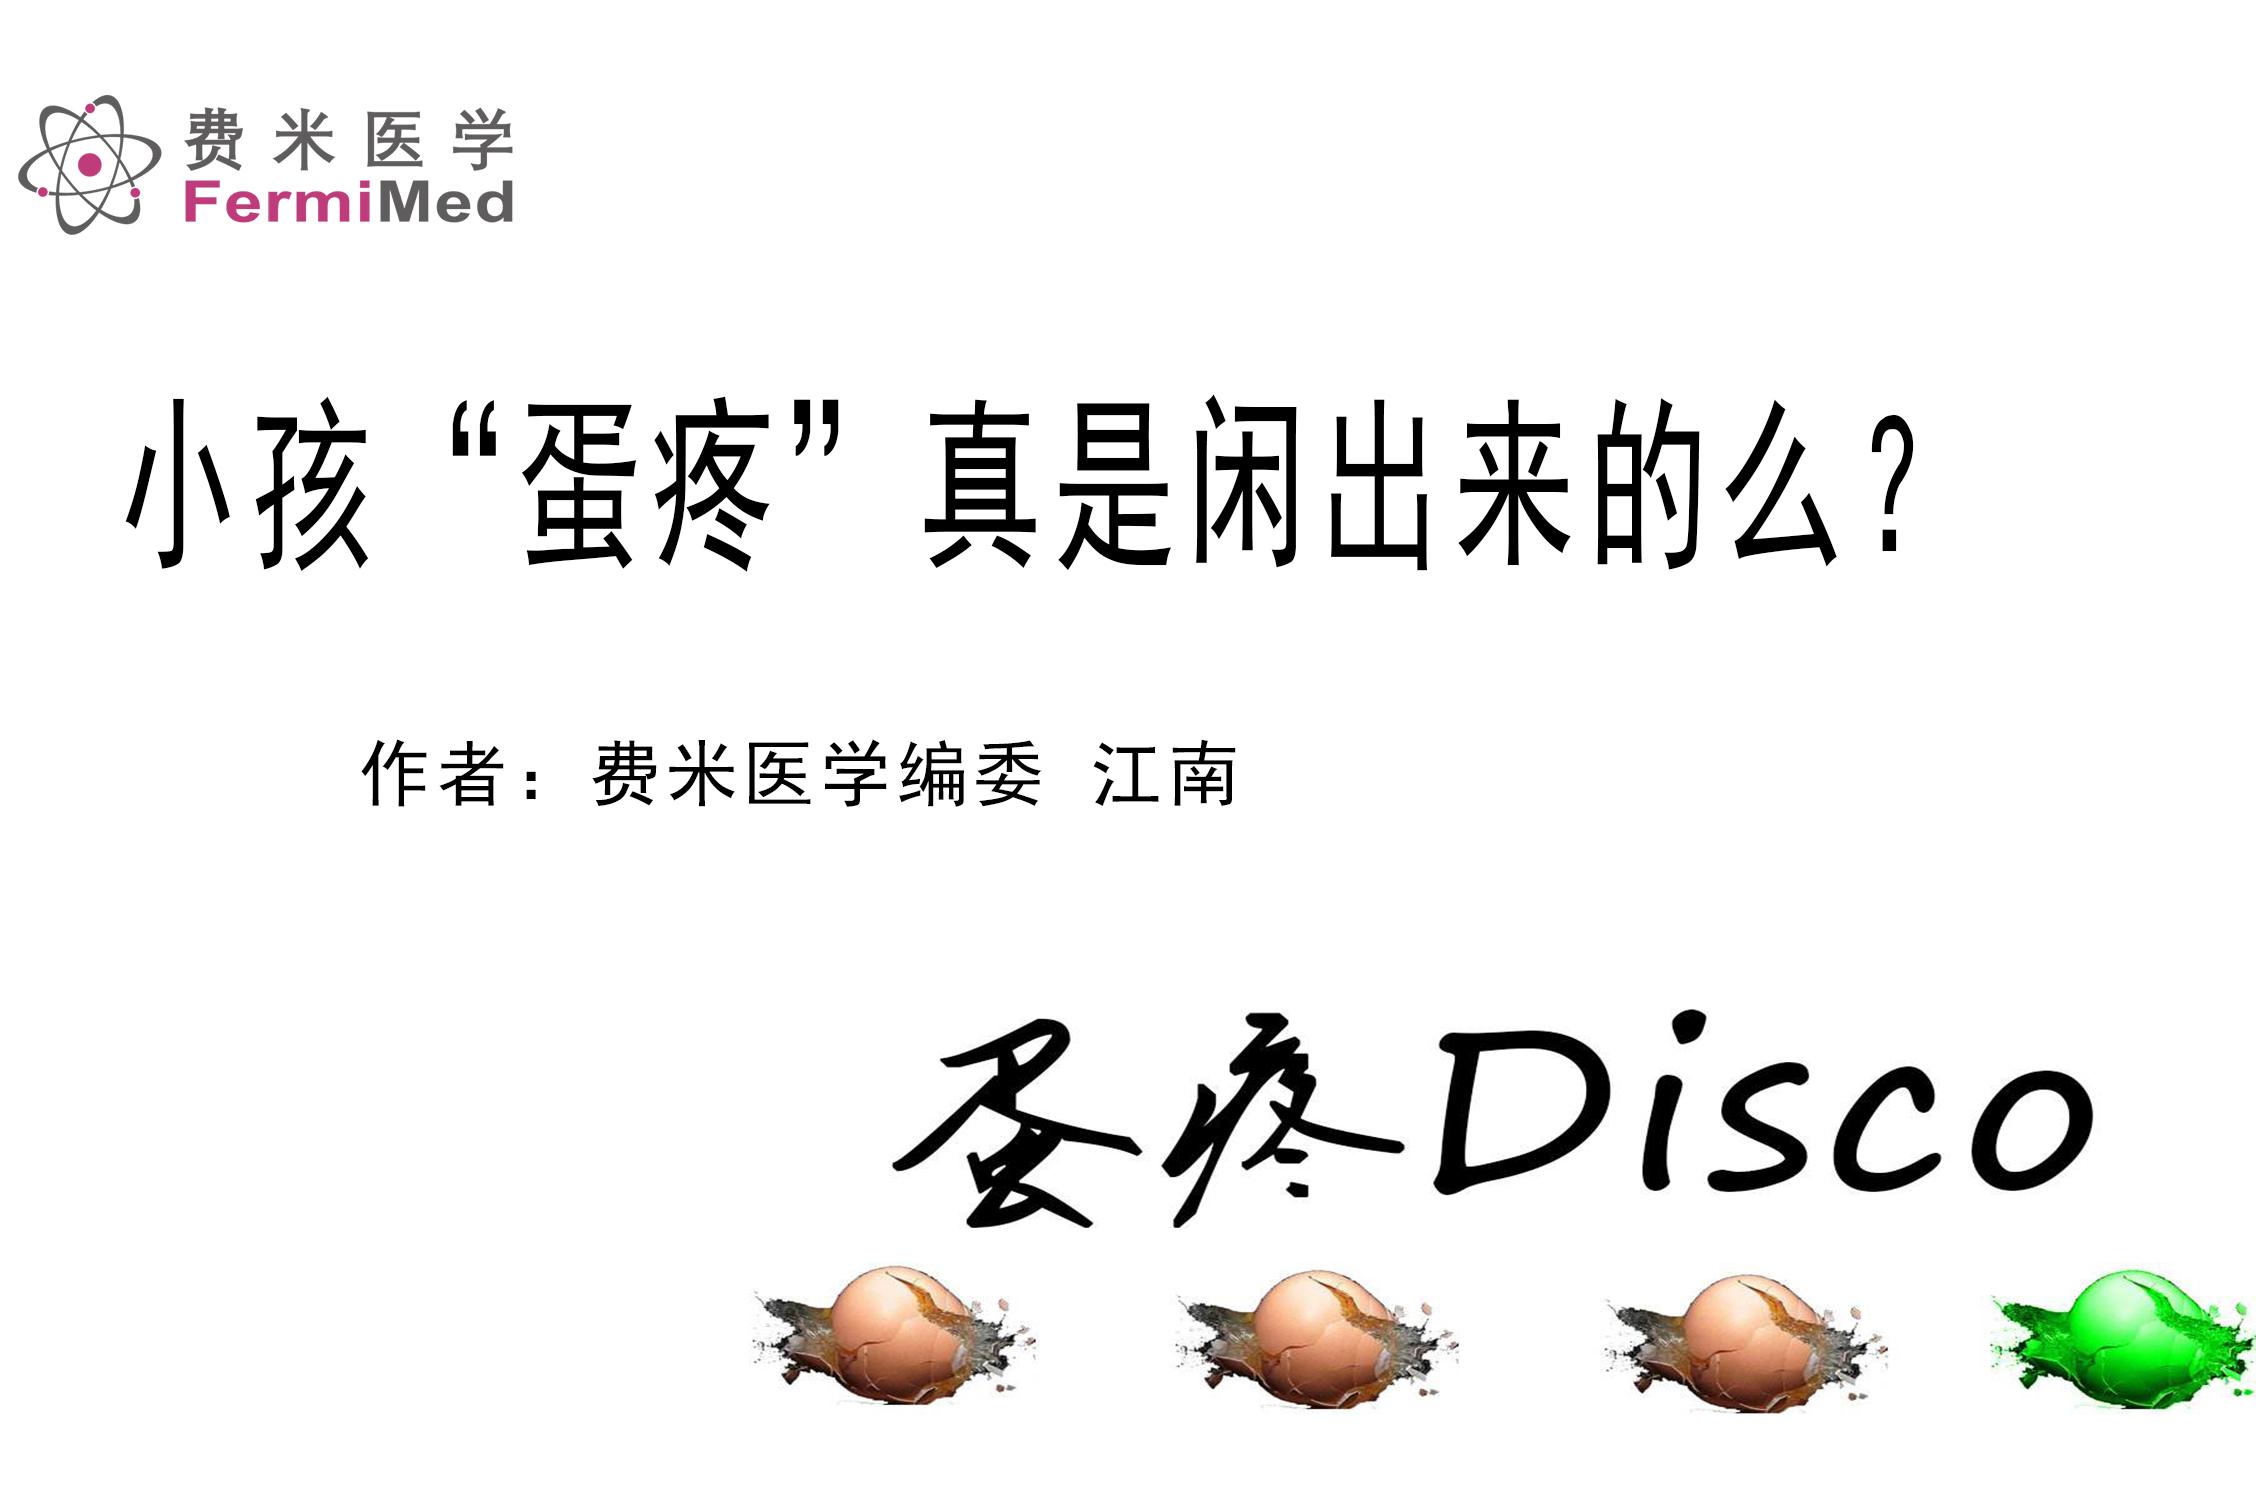 蛋仔派对dongdong羊表情包 - 堆糖，美图壁纸兴趣社区